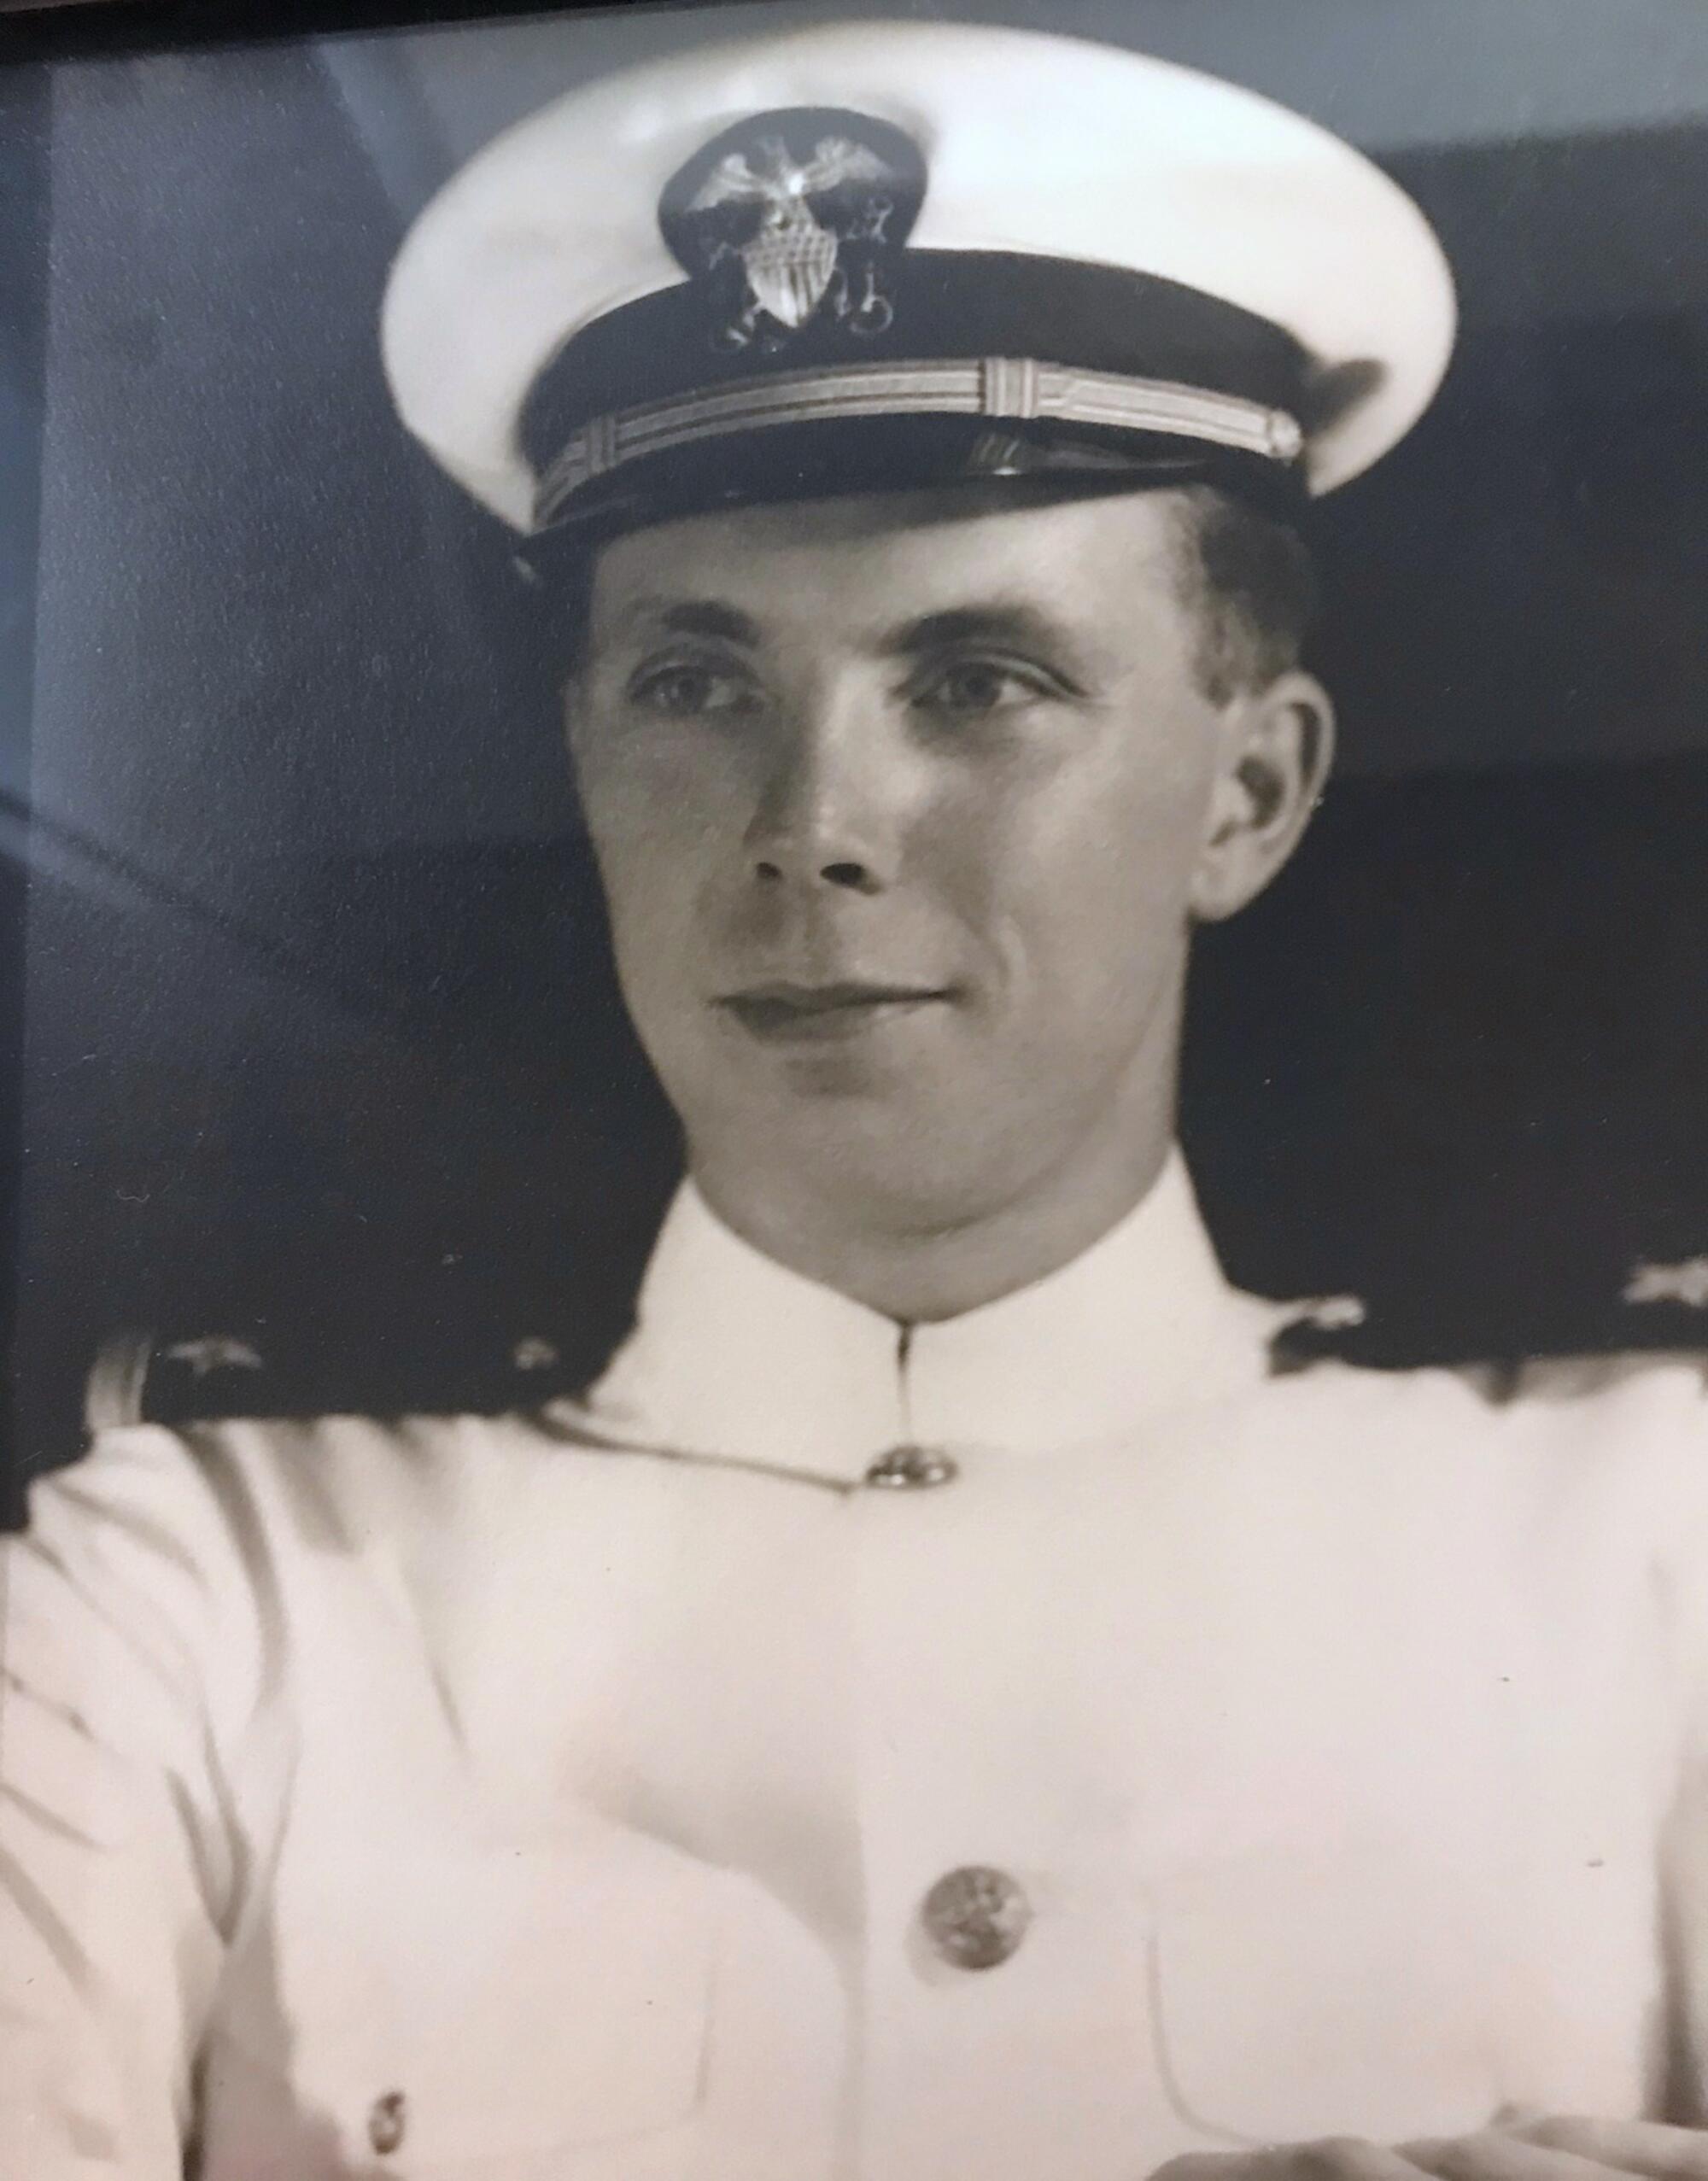 Robert Adrian in a white Navy uniform.